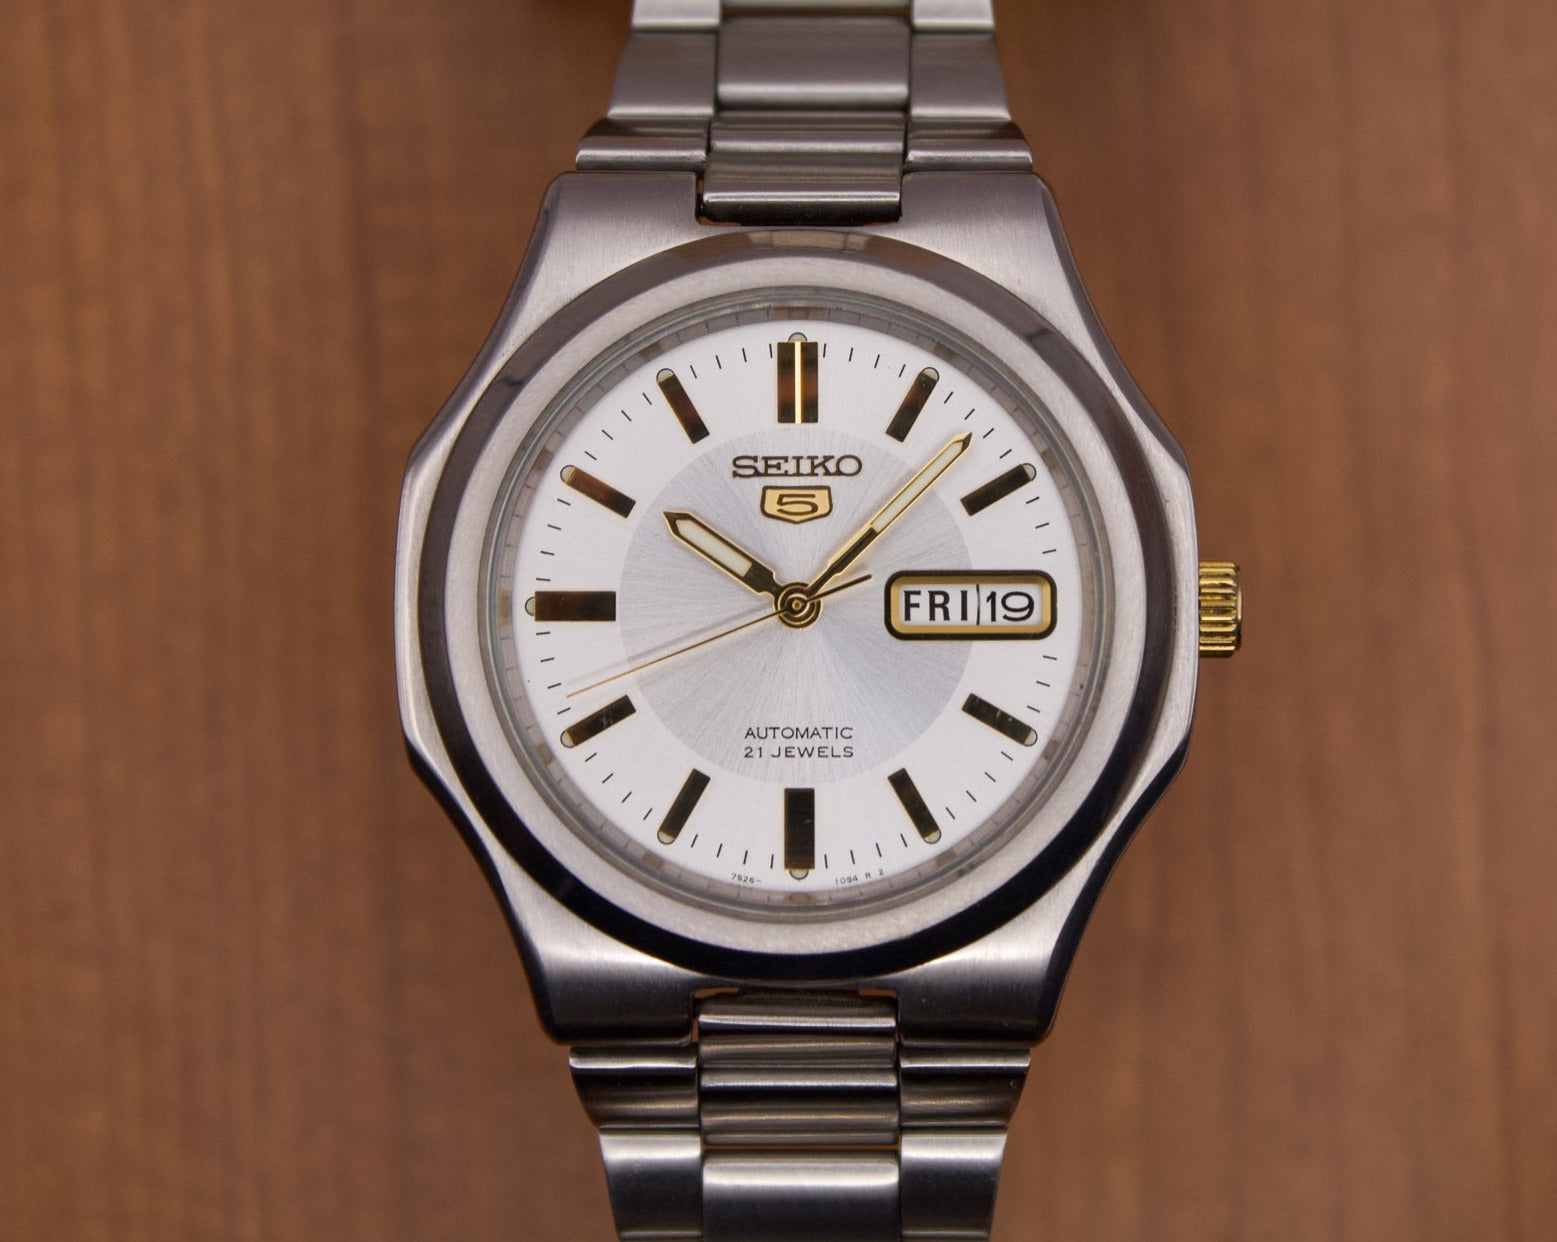 Seiko 5 'Seikonaut' Silver Sunburst Dial Men's Wrist-Watch – Mecalco & Co.